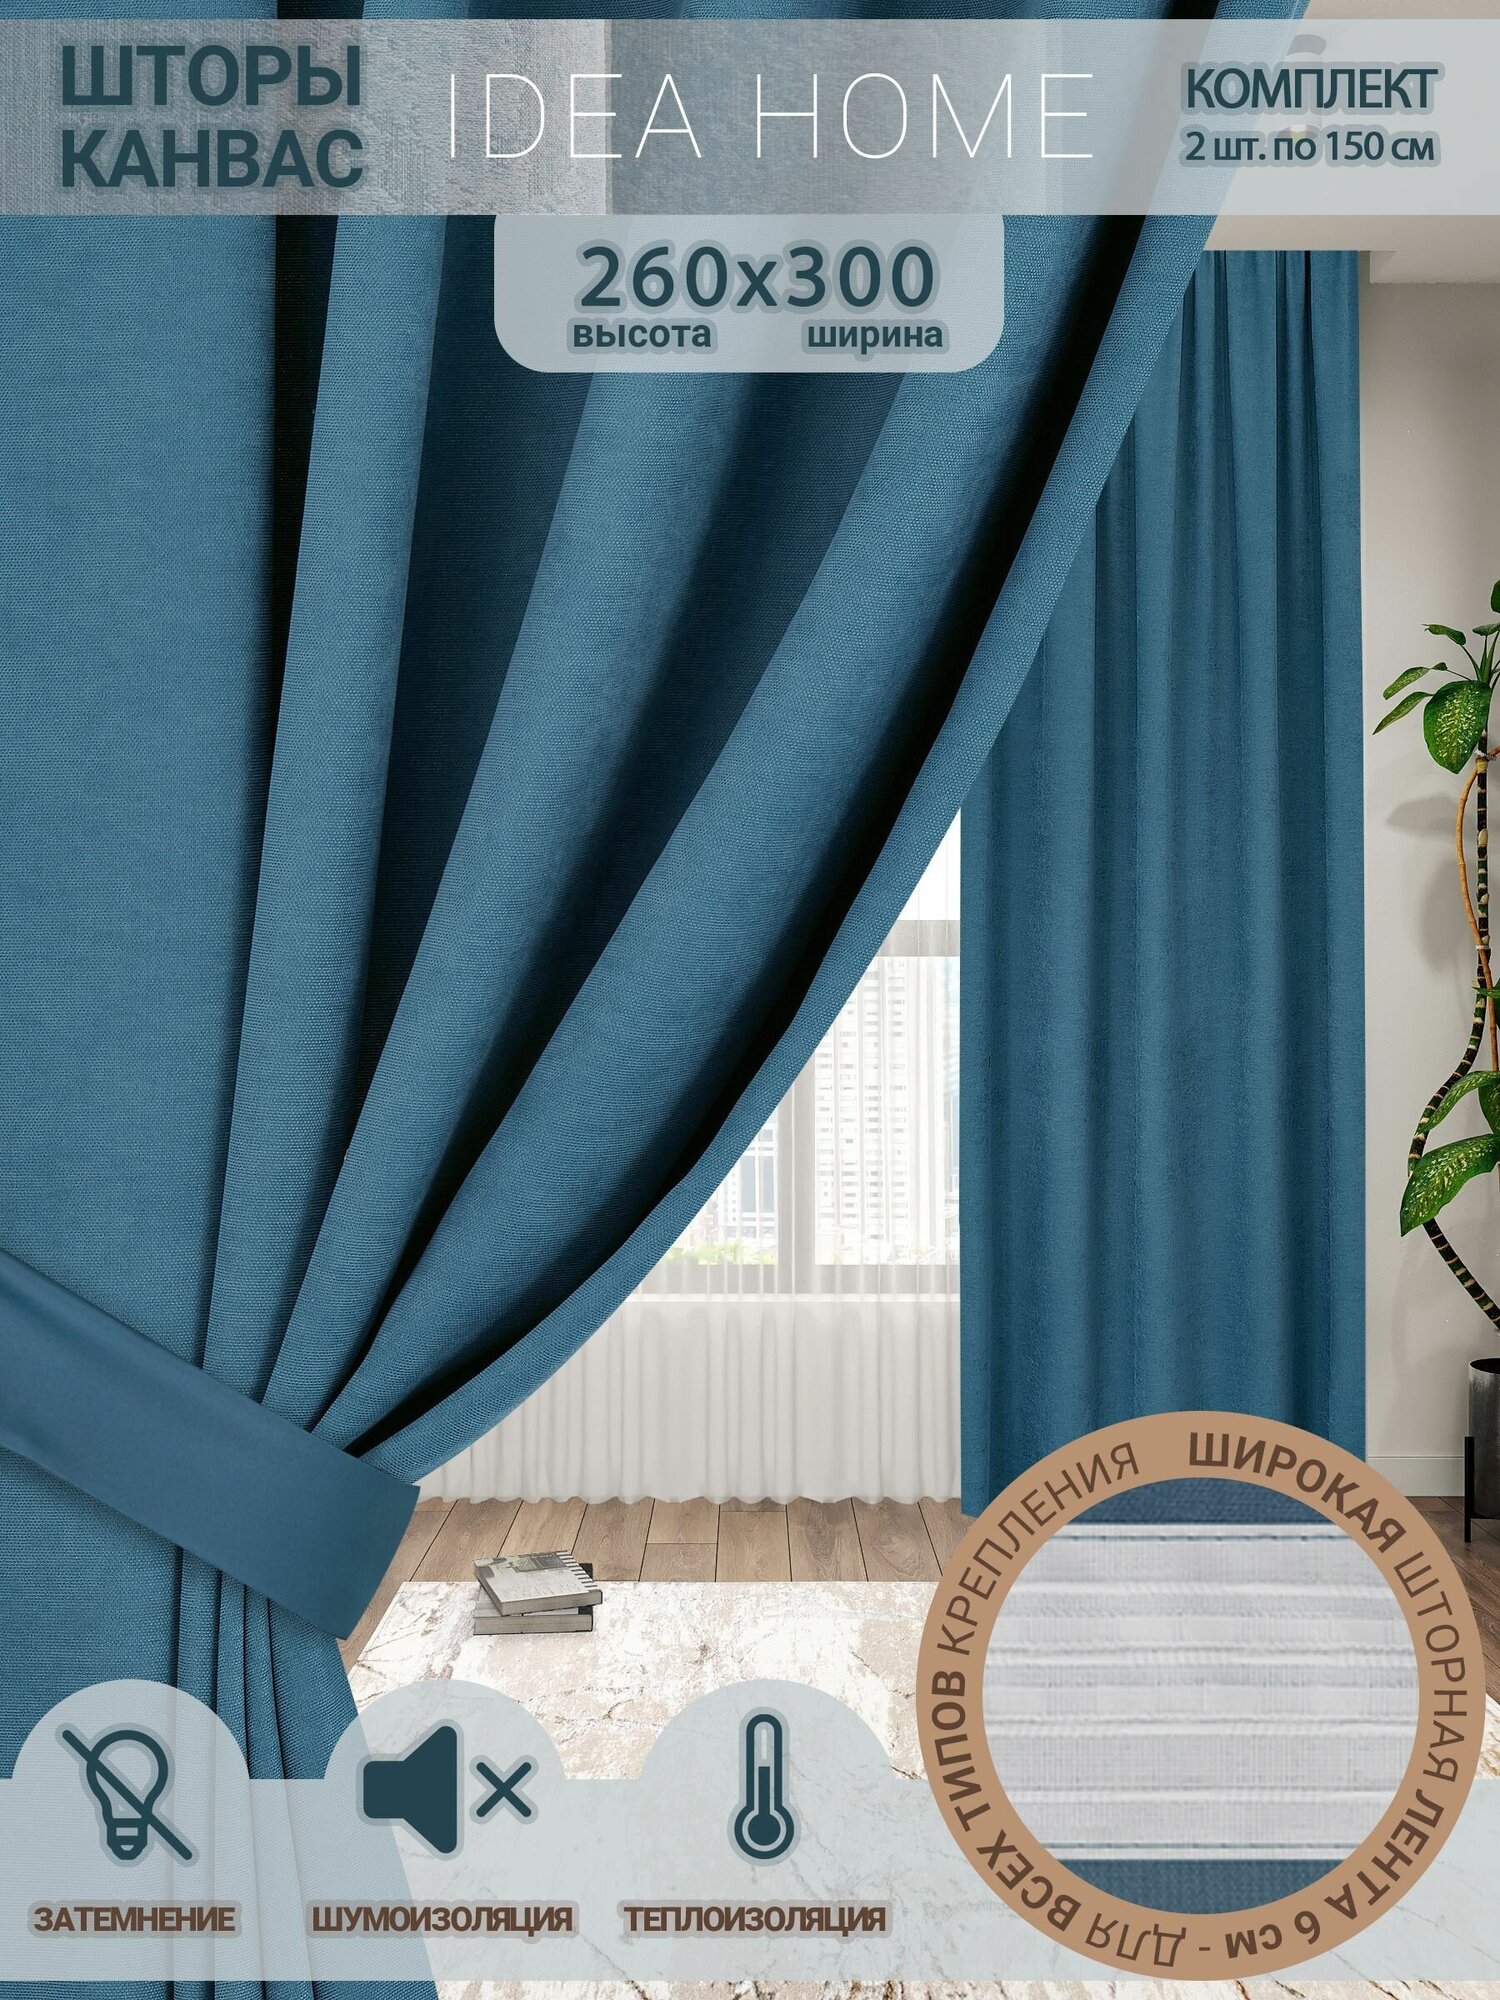 Комплект штор канвас / IDEA HOME / светозащитные шторы для комнаты кухни спальни гостиной и дачи